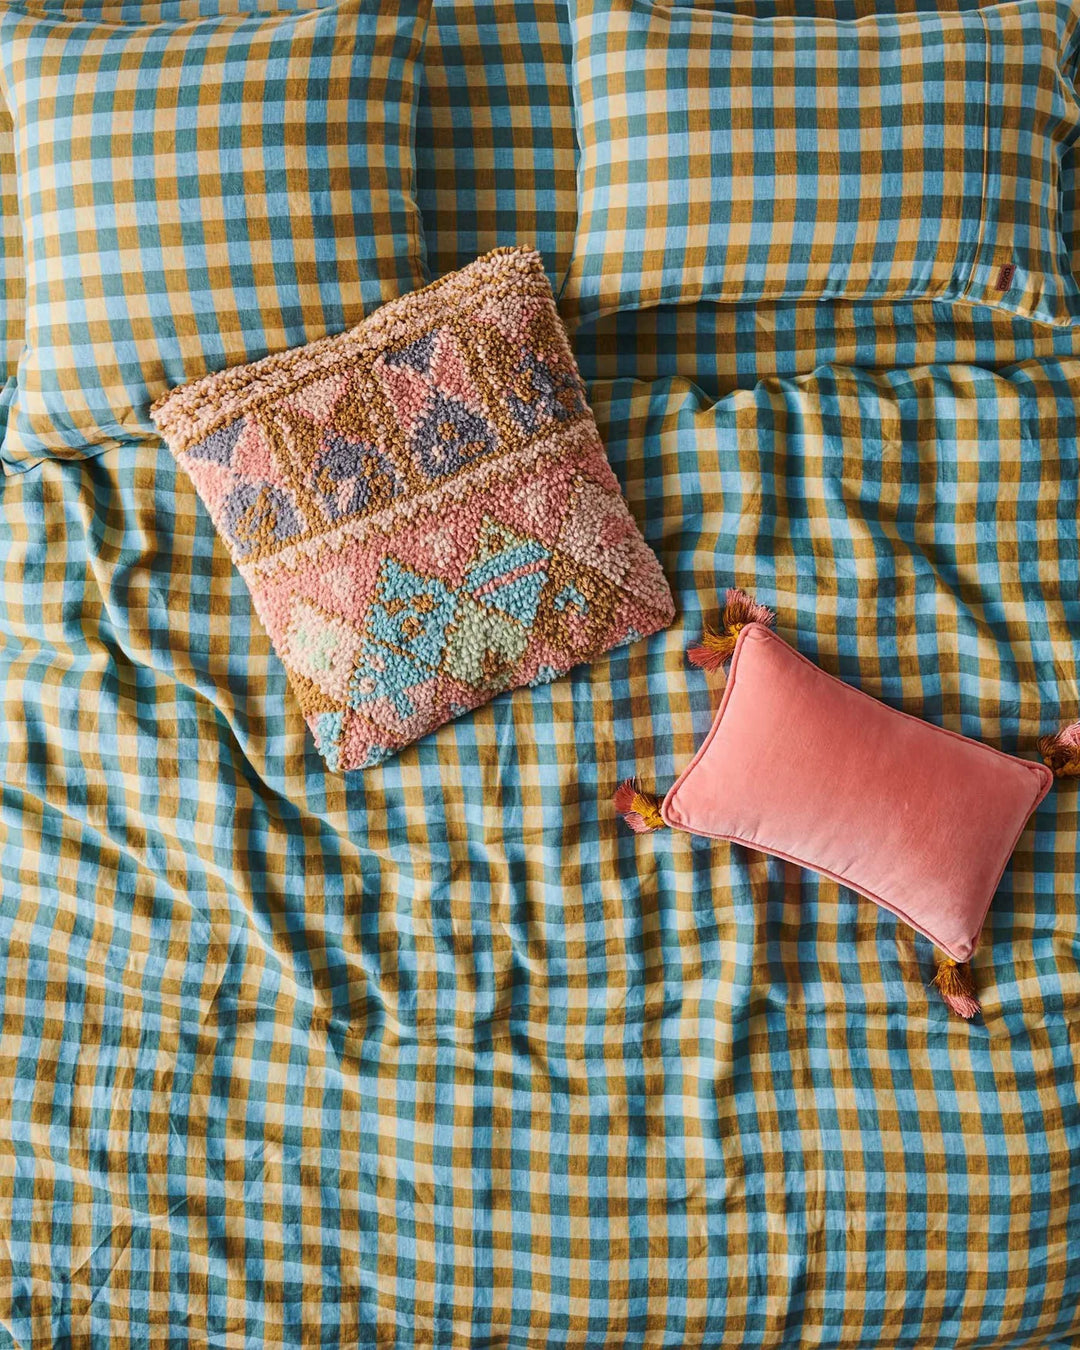 Kip&CO. Marigold Tartan Linen European Pillowcase - 2 pieces